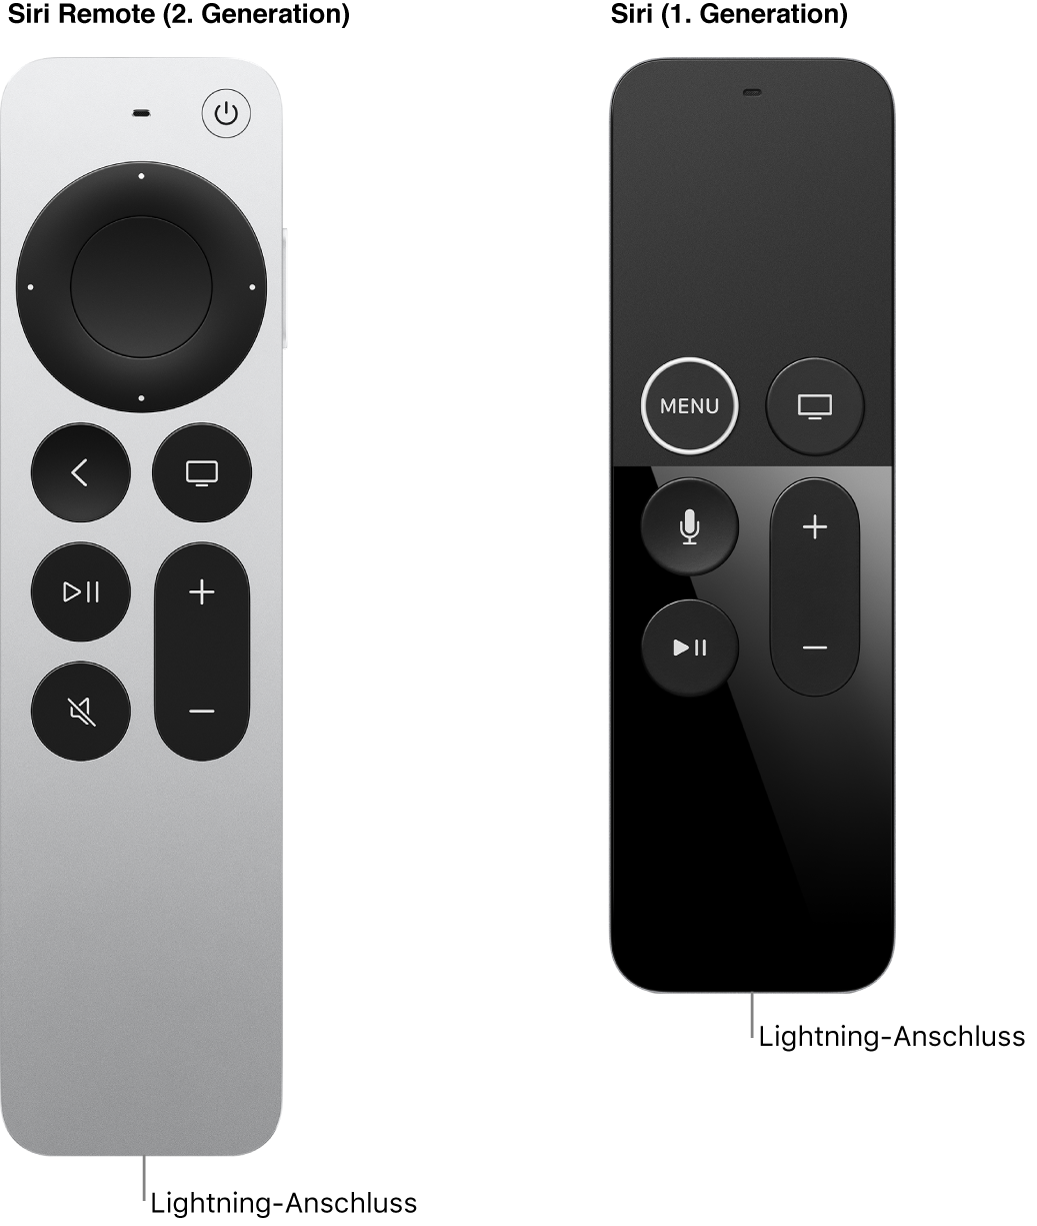 Bild der Siri Remote (2. Generation) und Siri Remote (1. Generation), das den Lightning-Anschluss zeigt